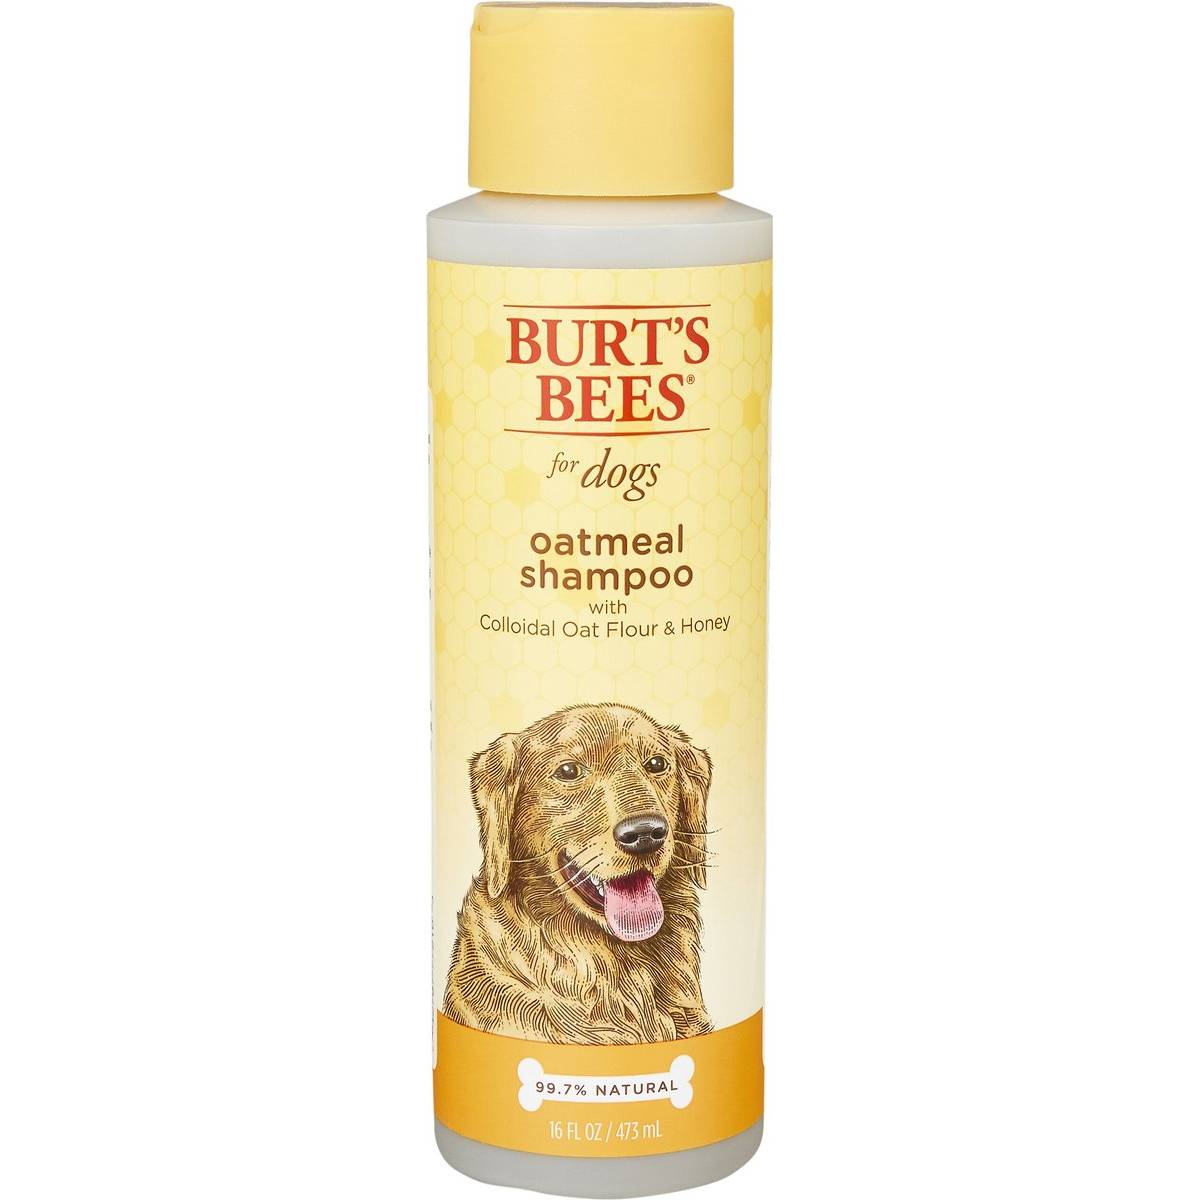 Burt's Bees Oatmeal with Colloidal Oat Flour & Honey Dog Shampoo